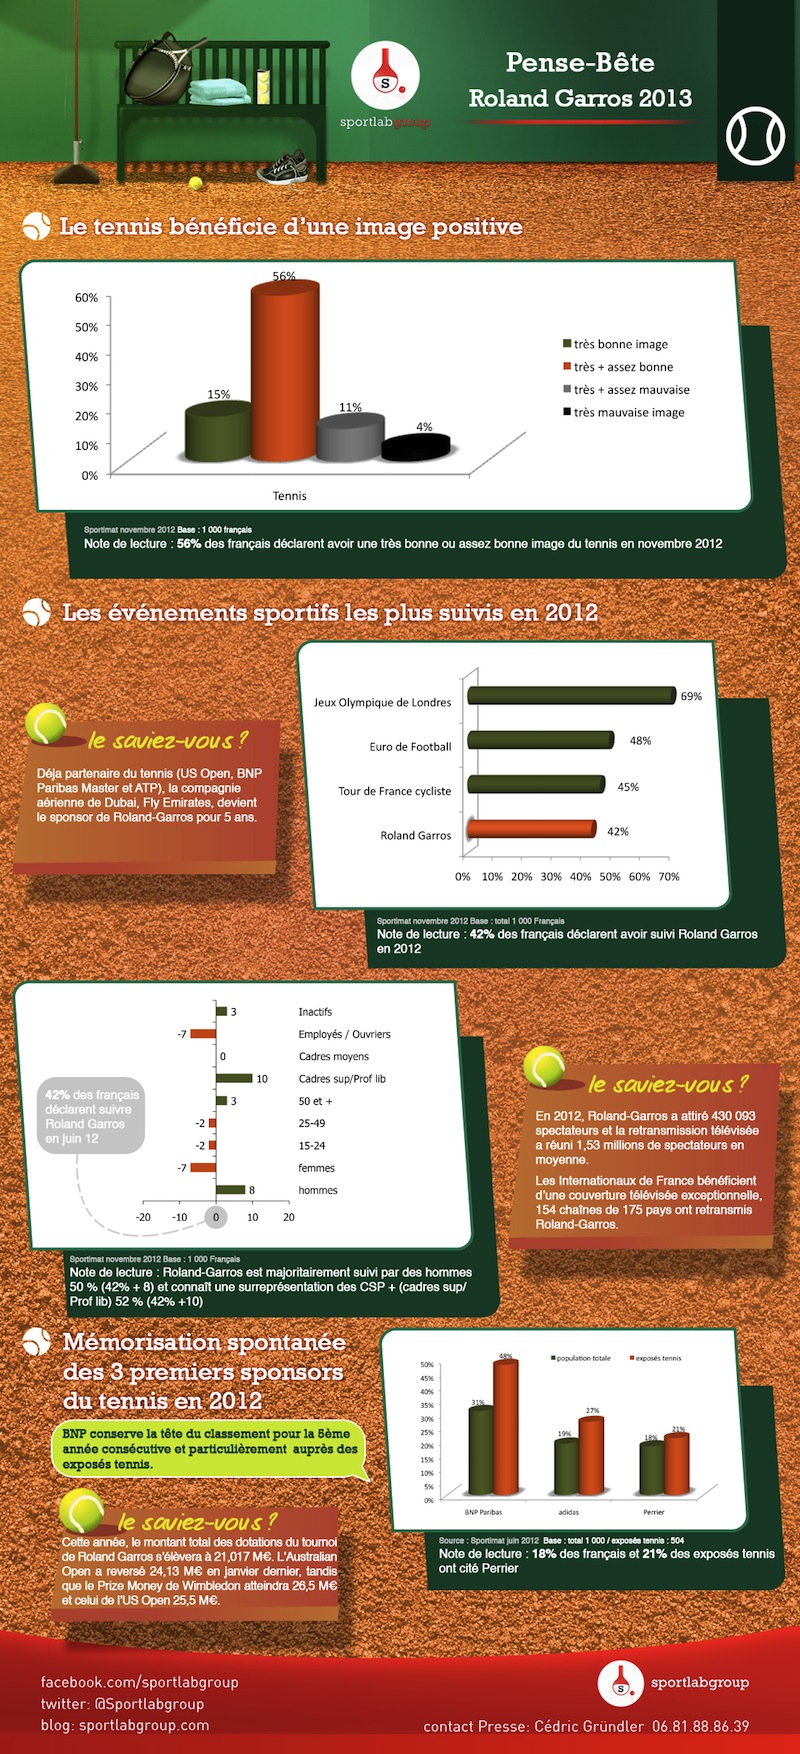 Roland Garros 2013 : infographie et pense-bête